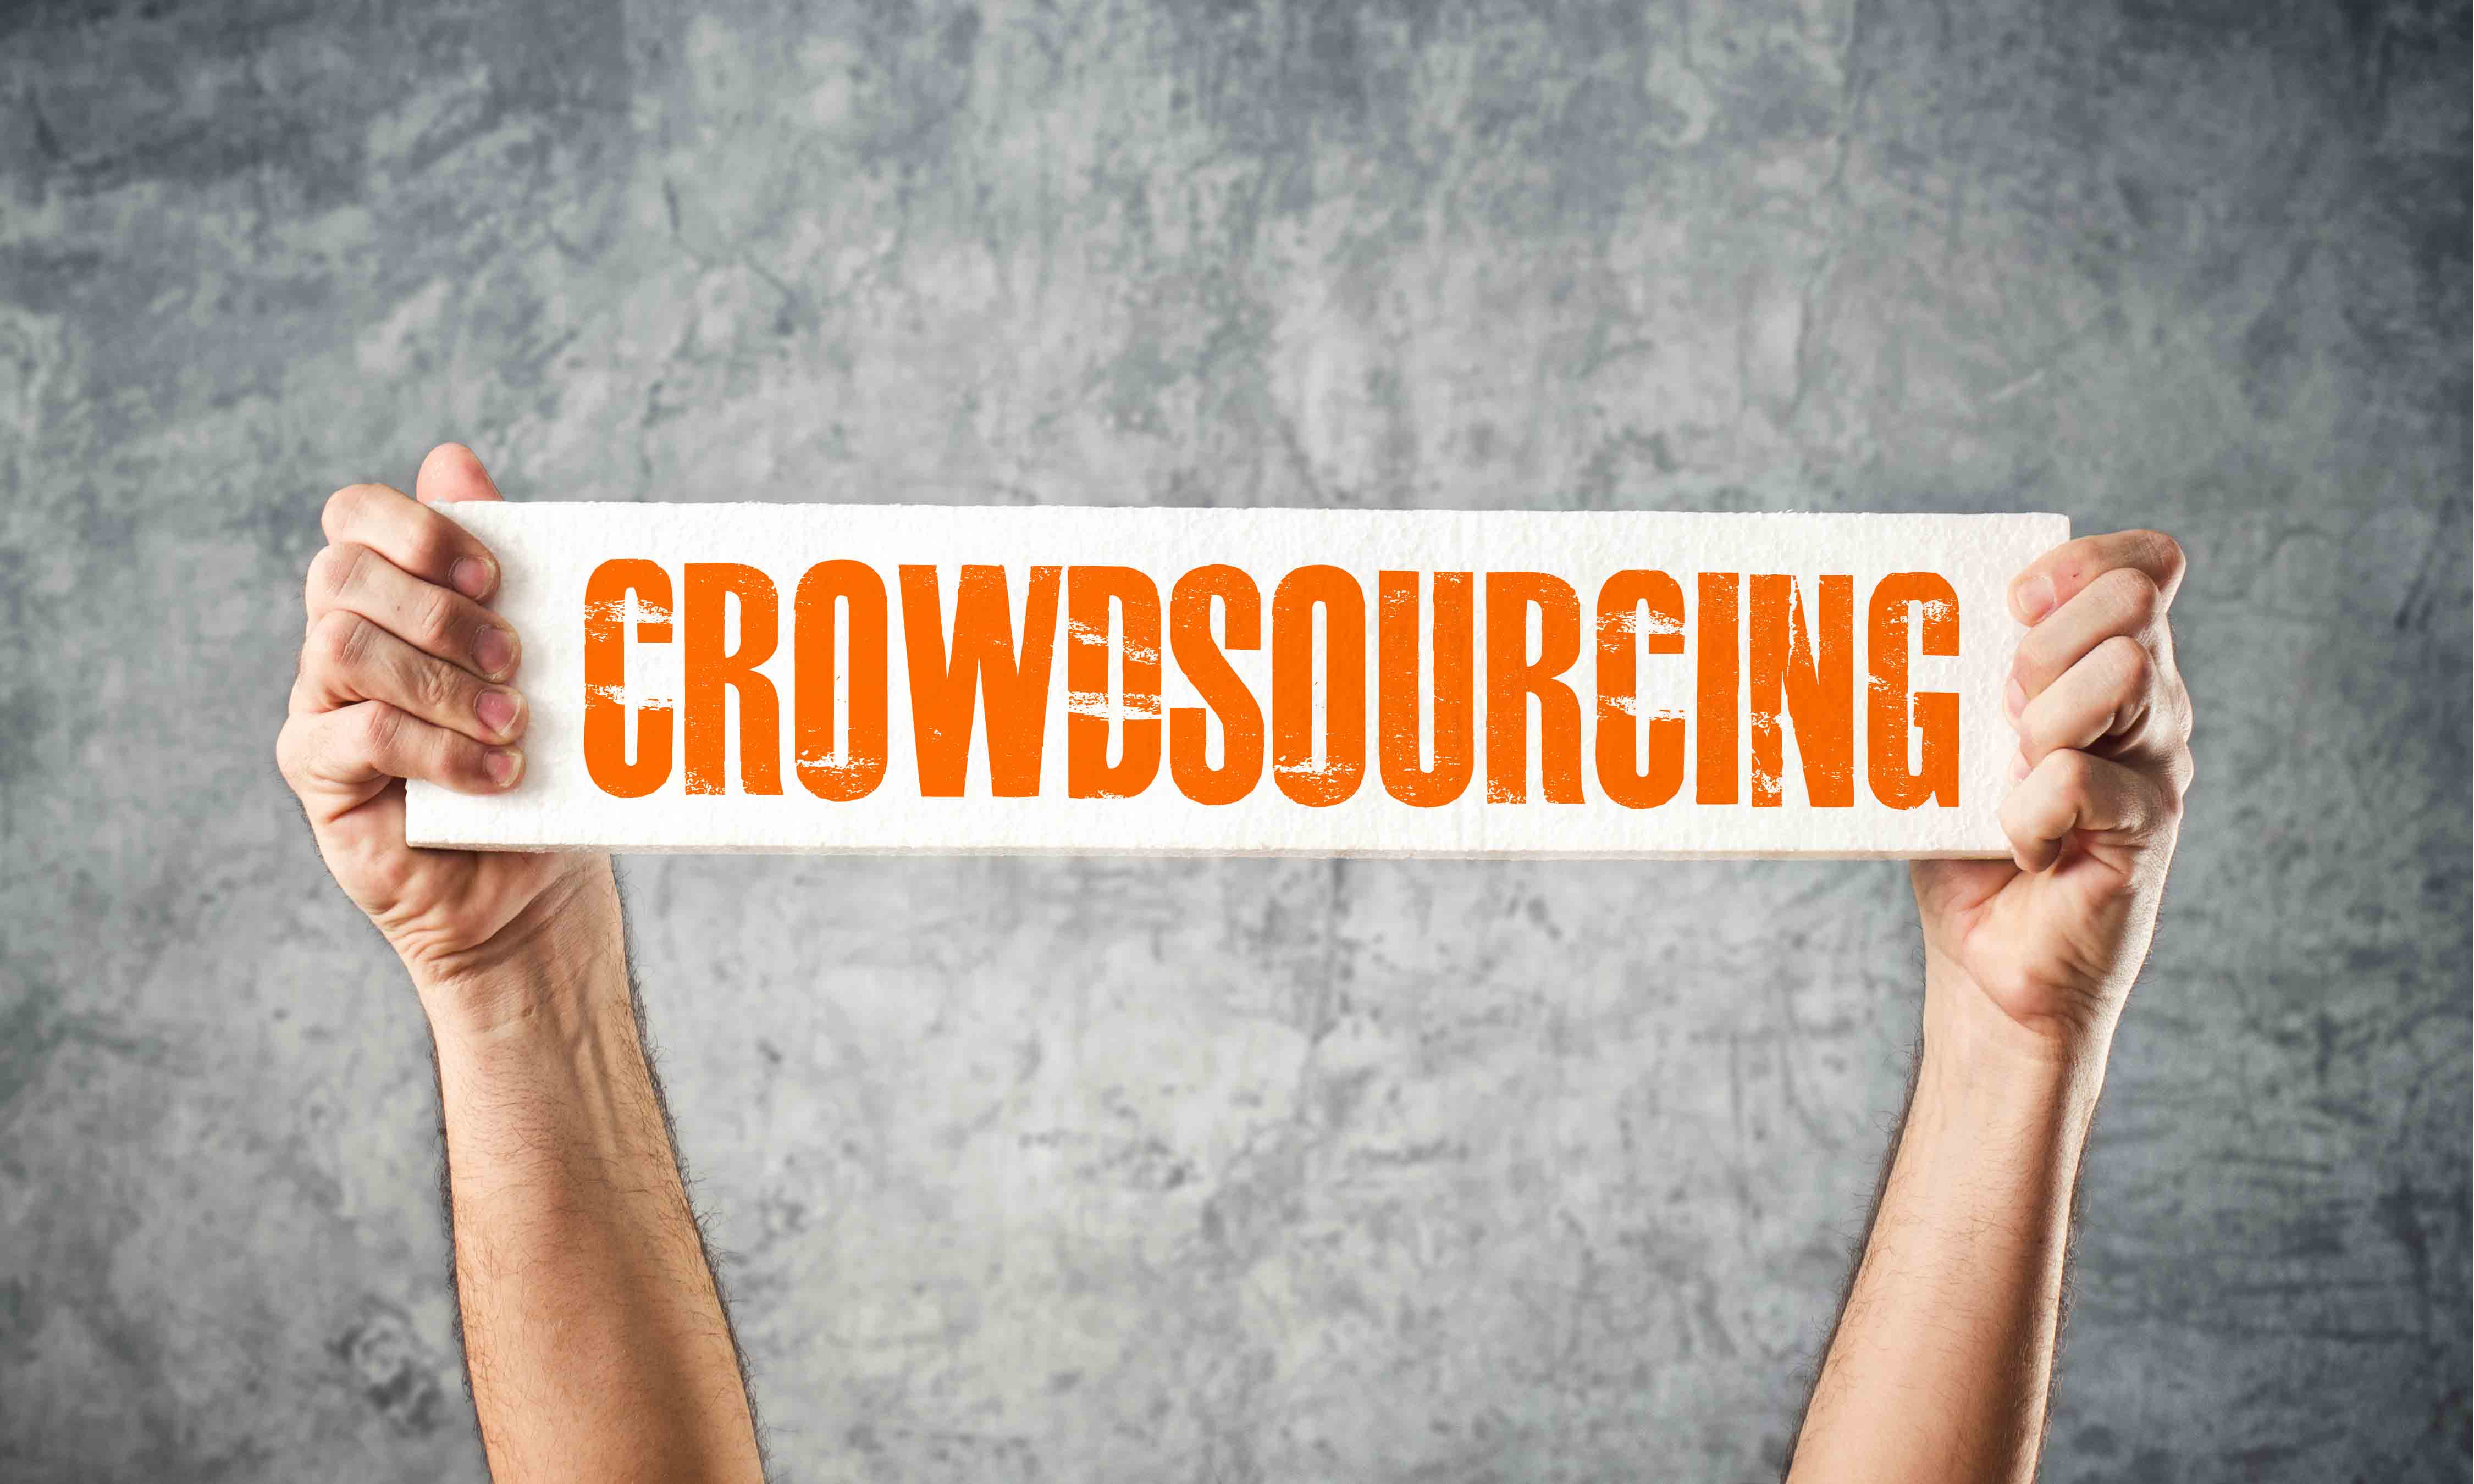 crowdsourcing-blog-1139922845